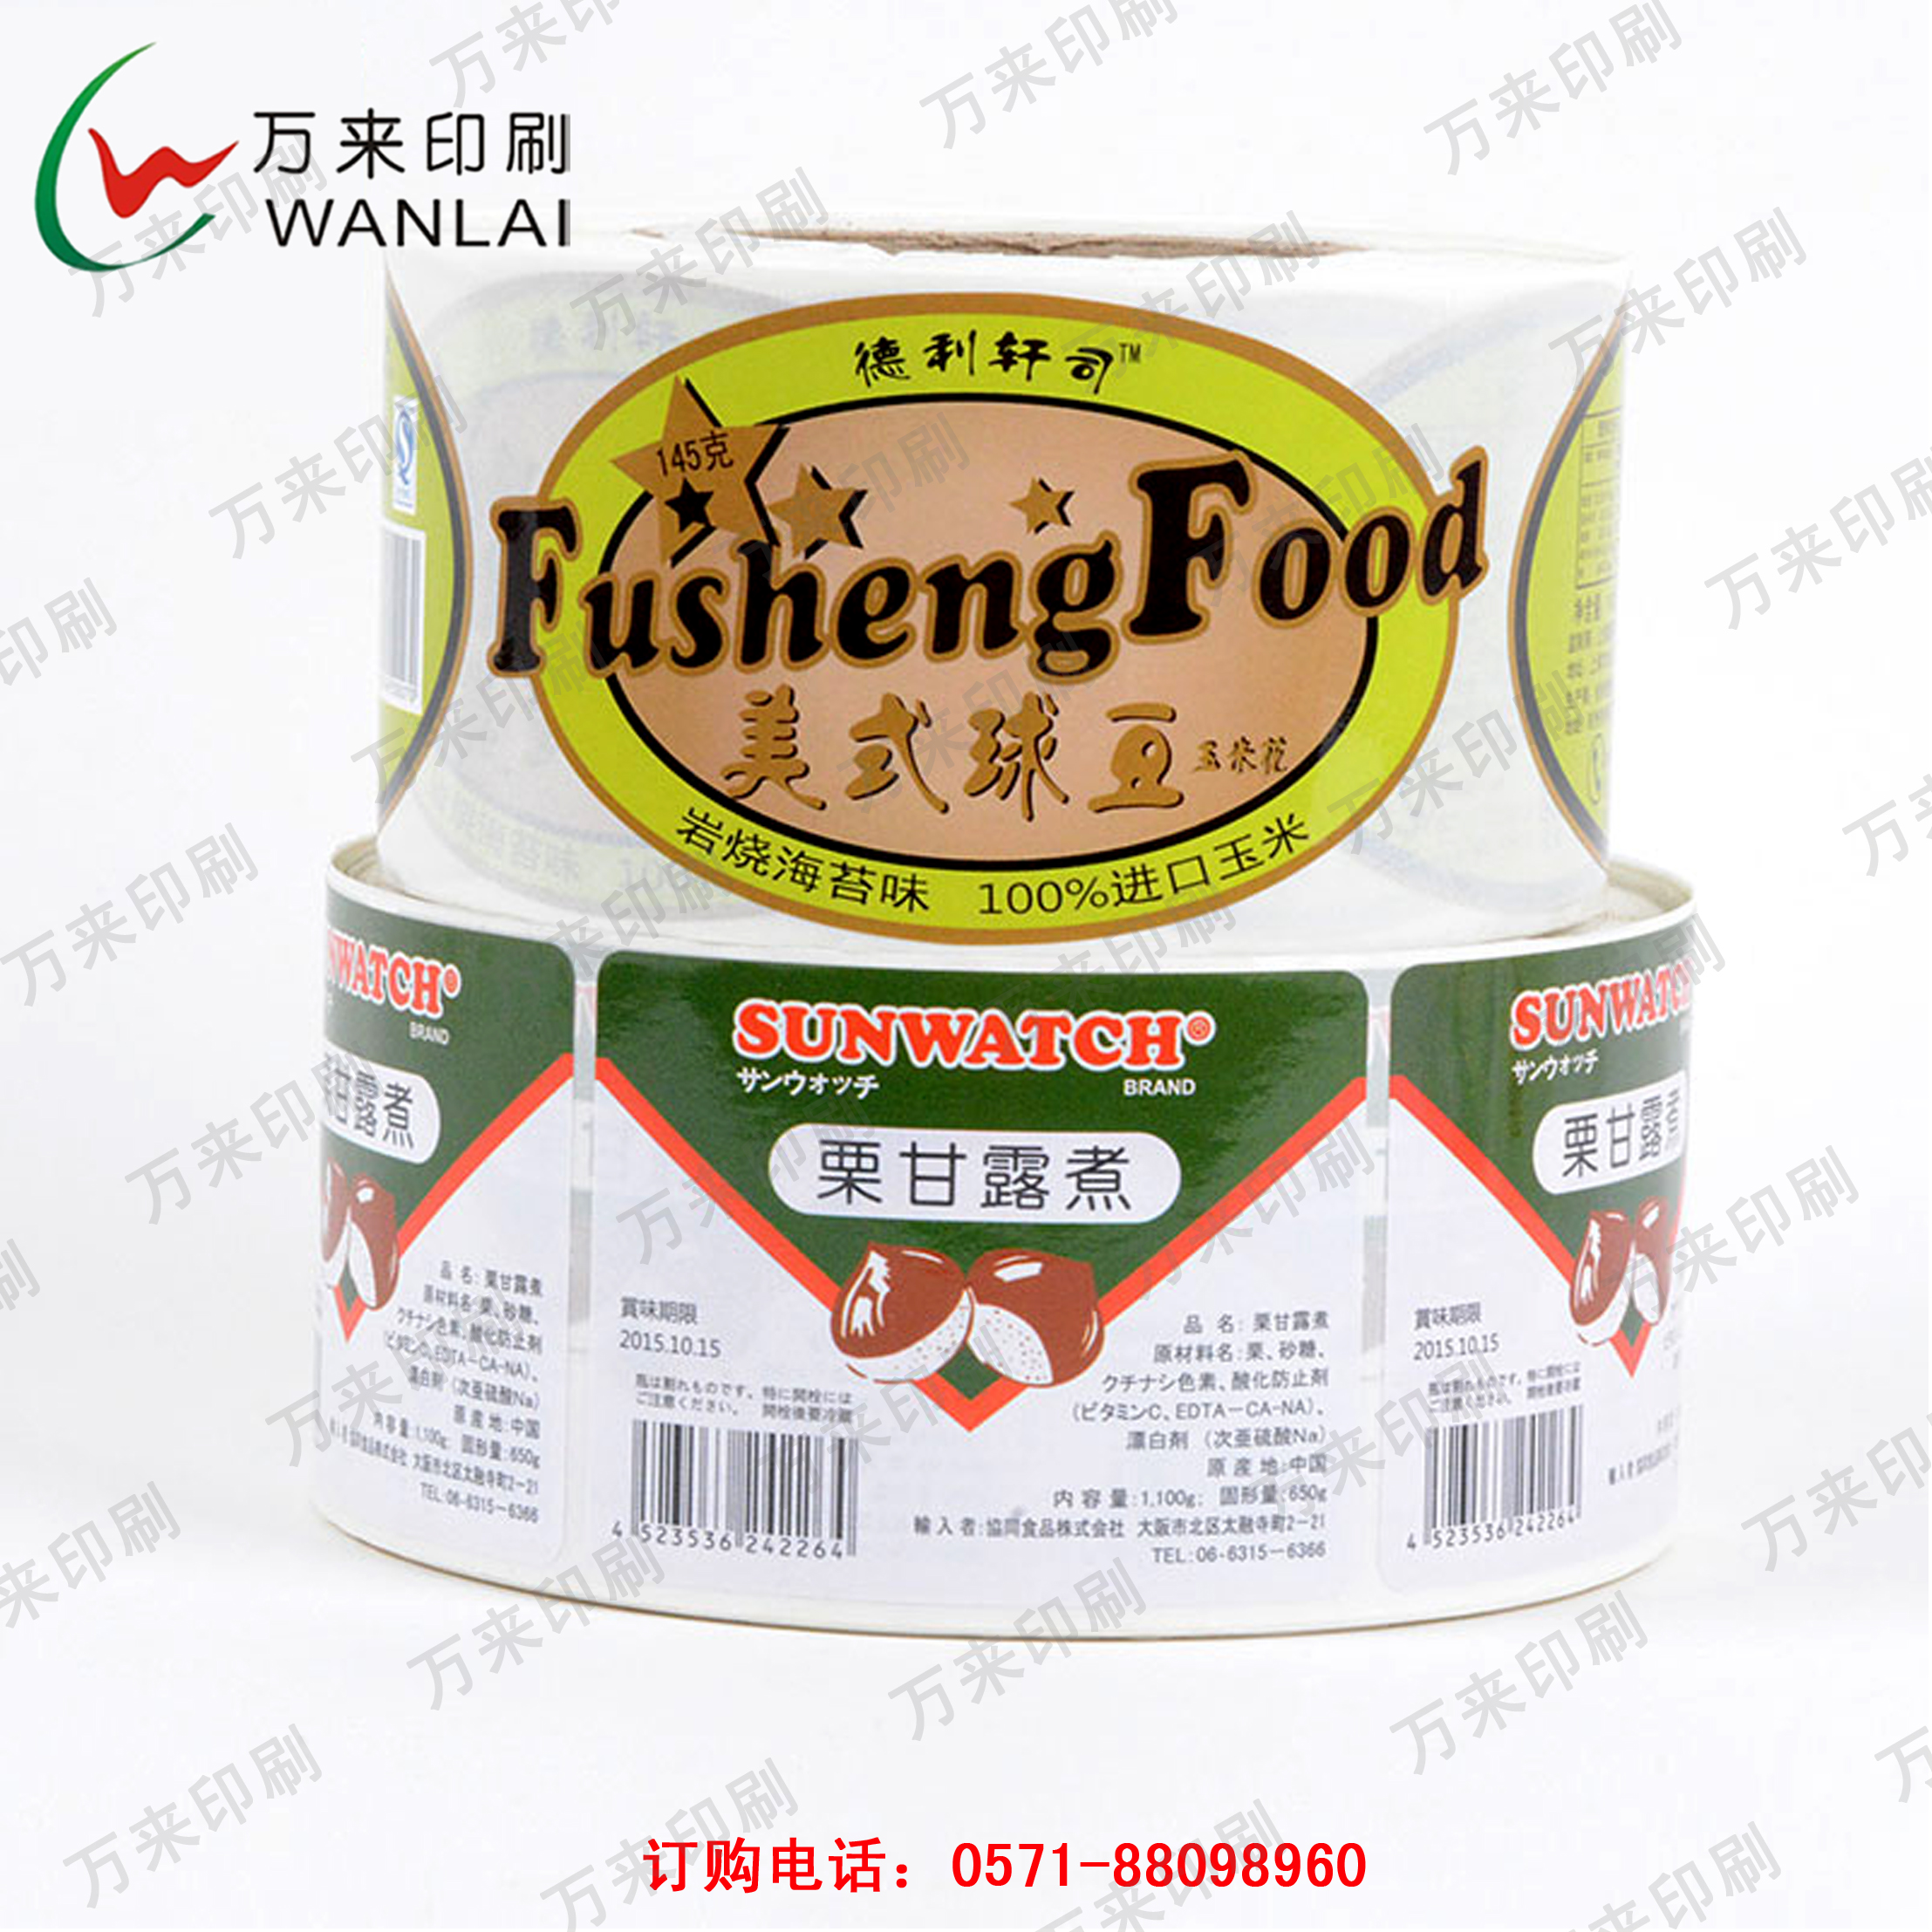 供应用于食品外盒包装|塑料外瓶的卷筒式不干胶标签定制杭州万来印刷图片